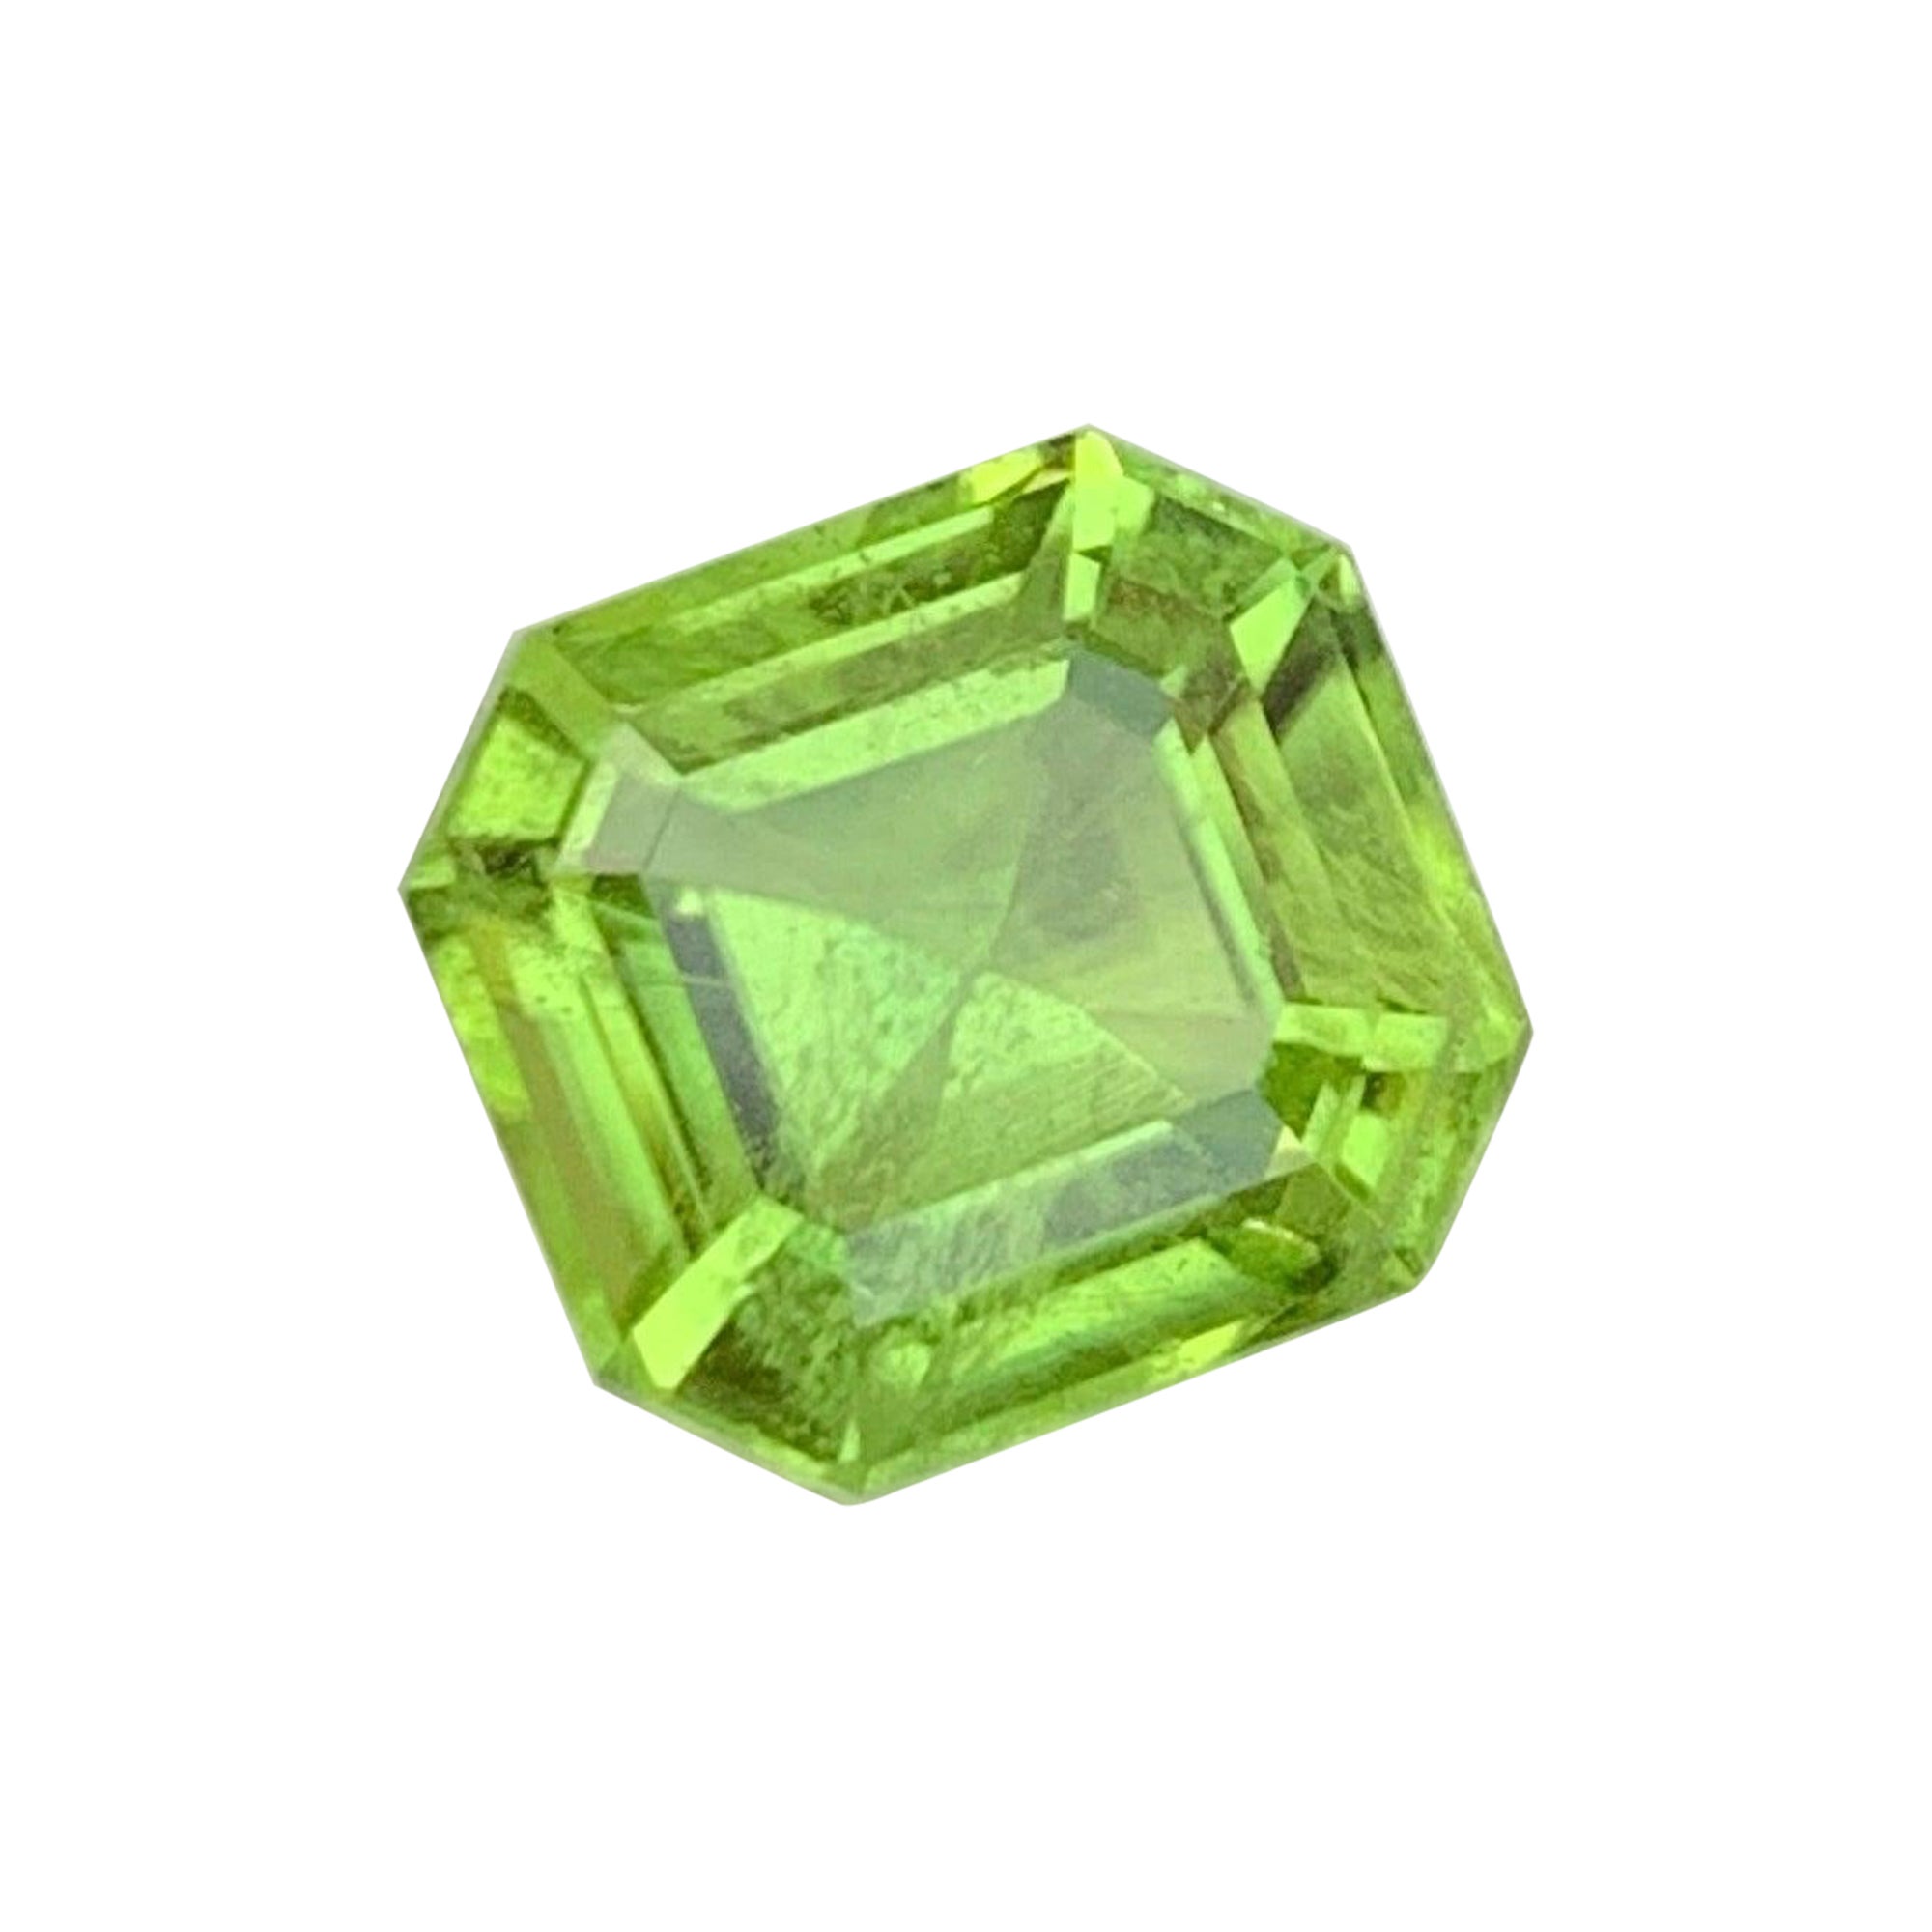 Fabuleux péridot vert pomme non serti de 4,05 carats, pierre précieuse pour bague joaillerie